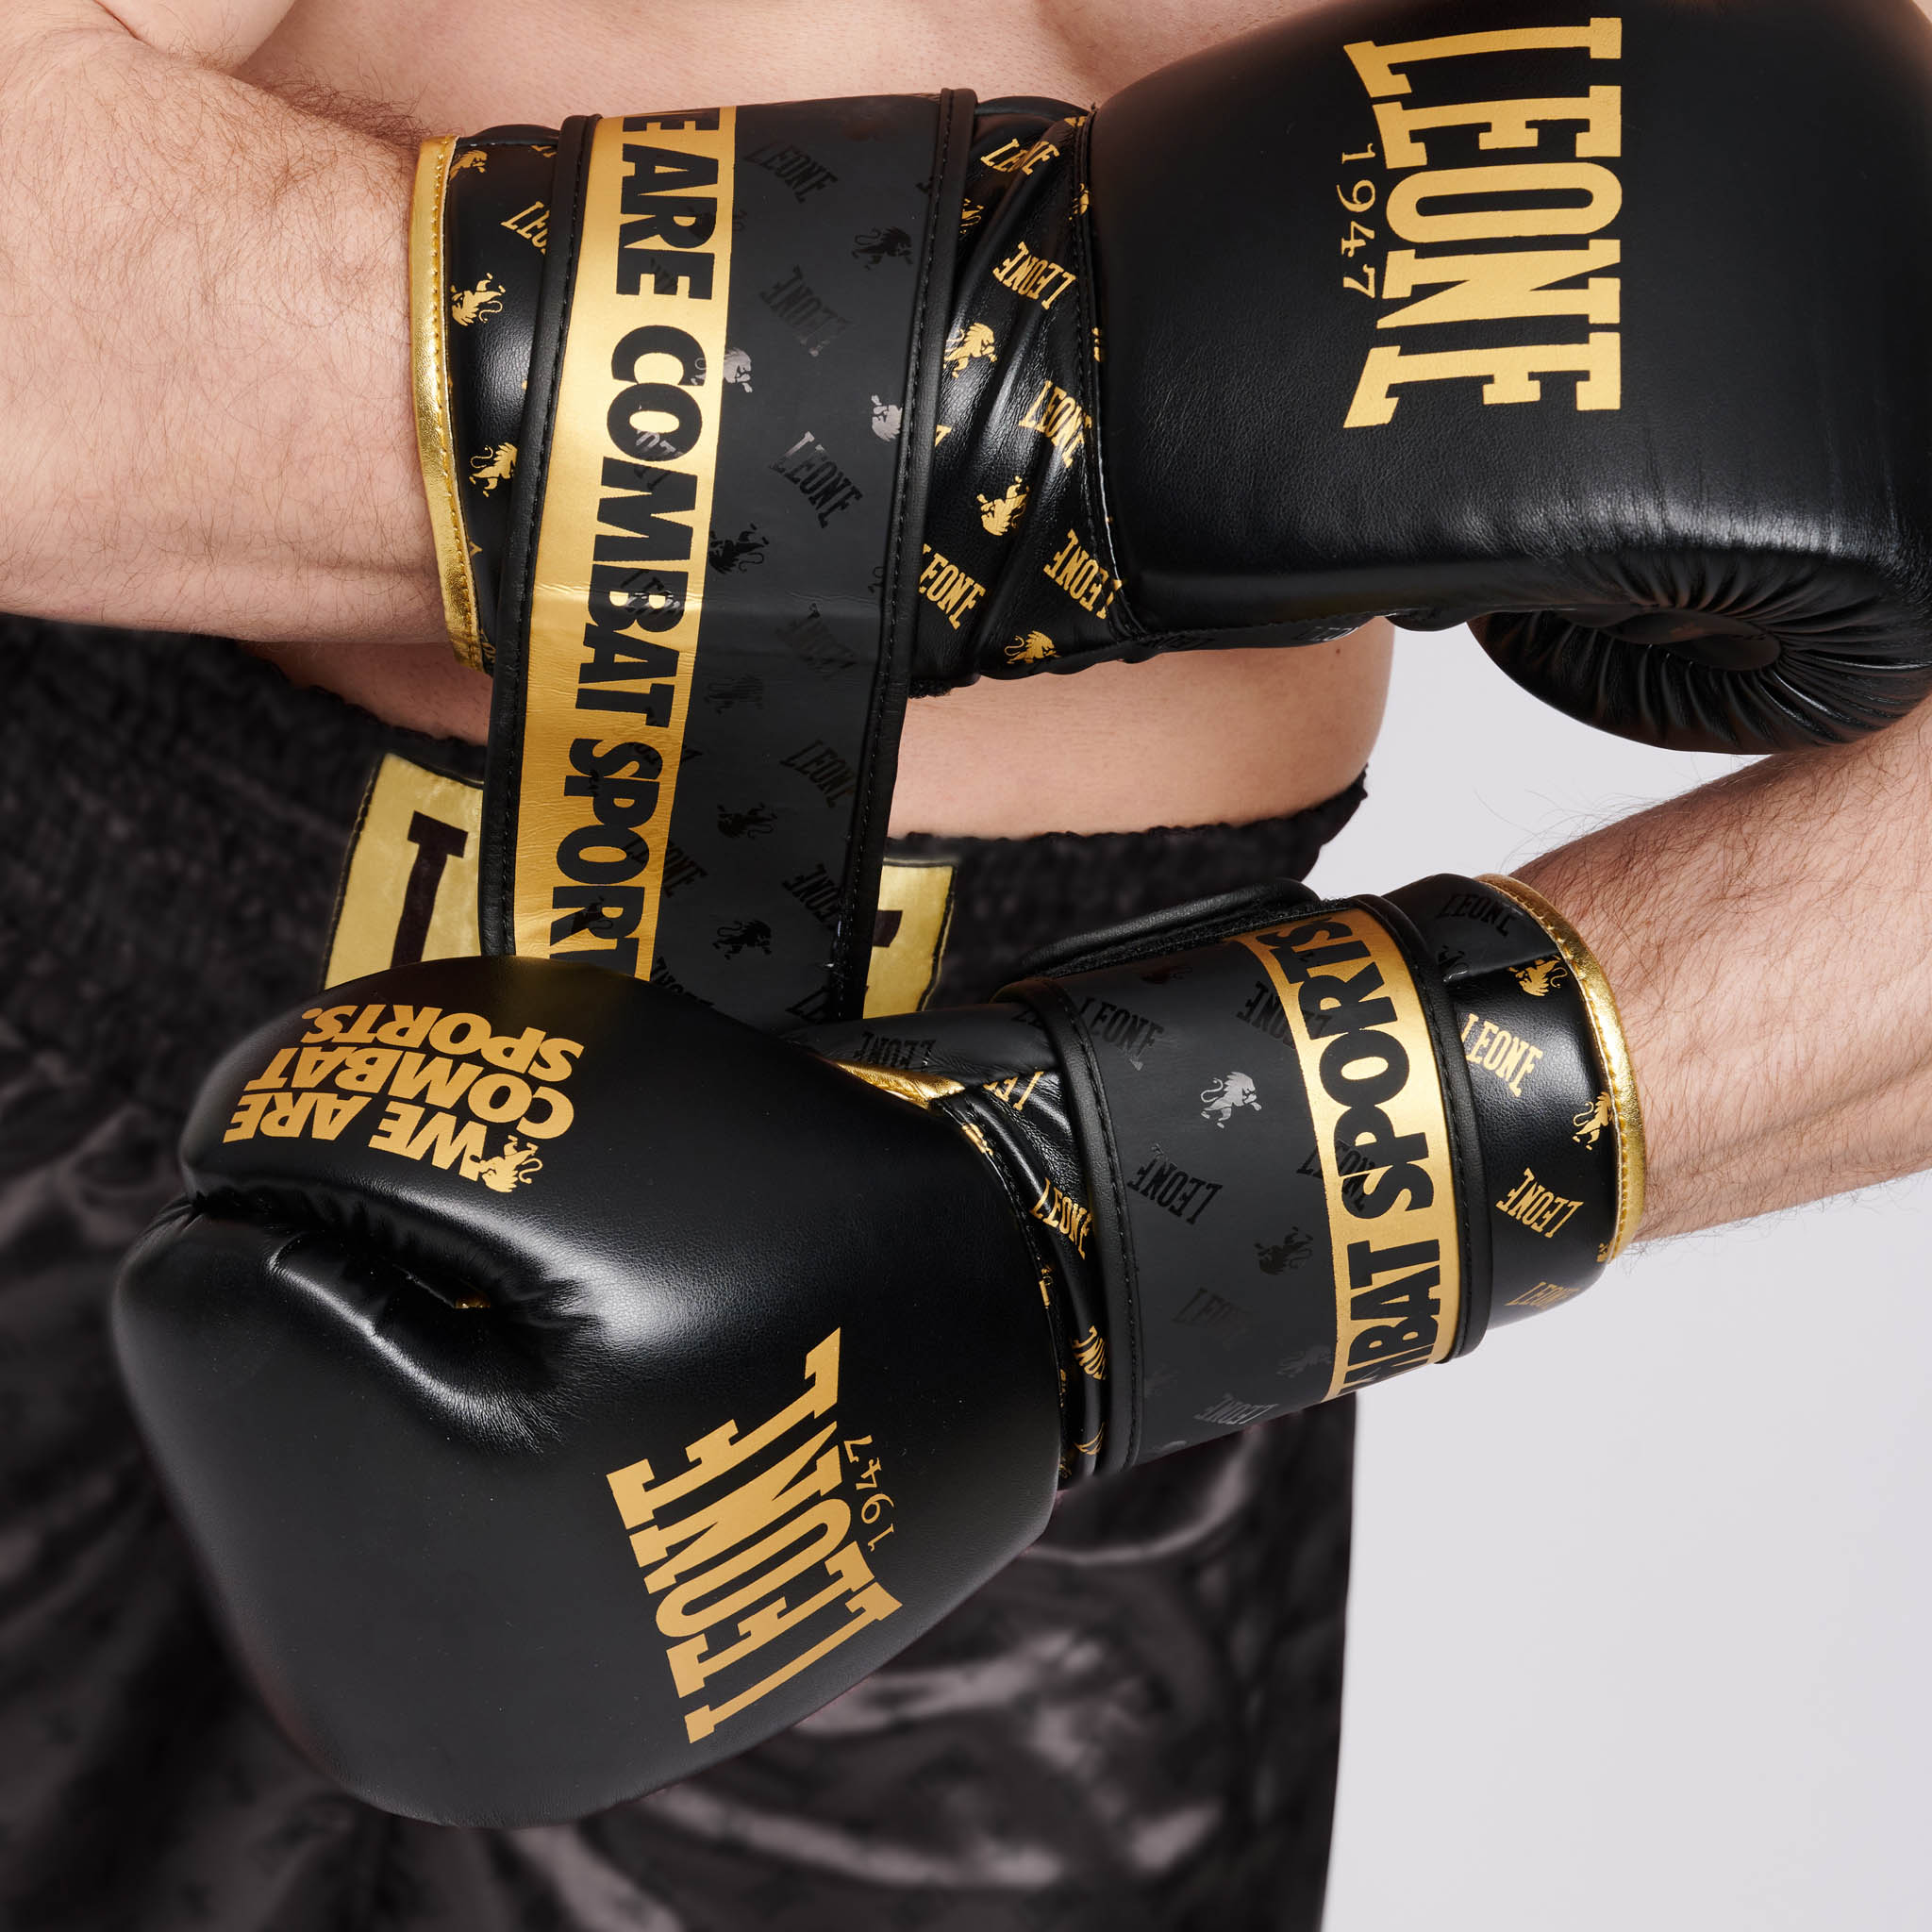 guantes de boxeo Ambassador LEONE